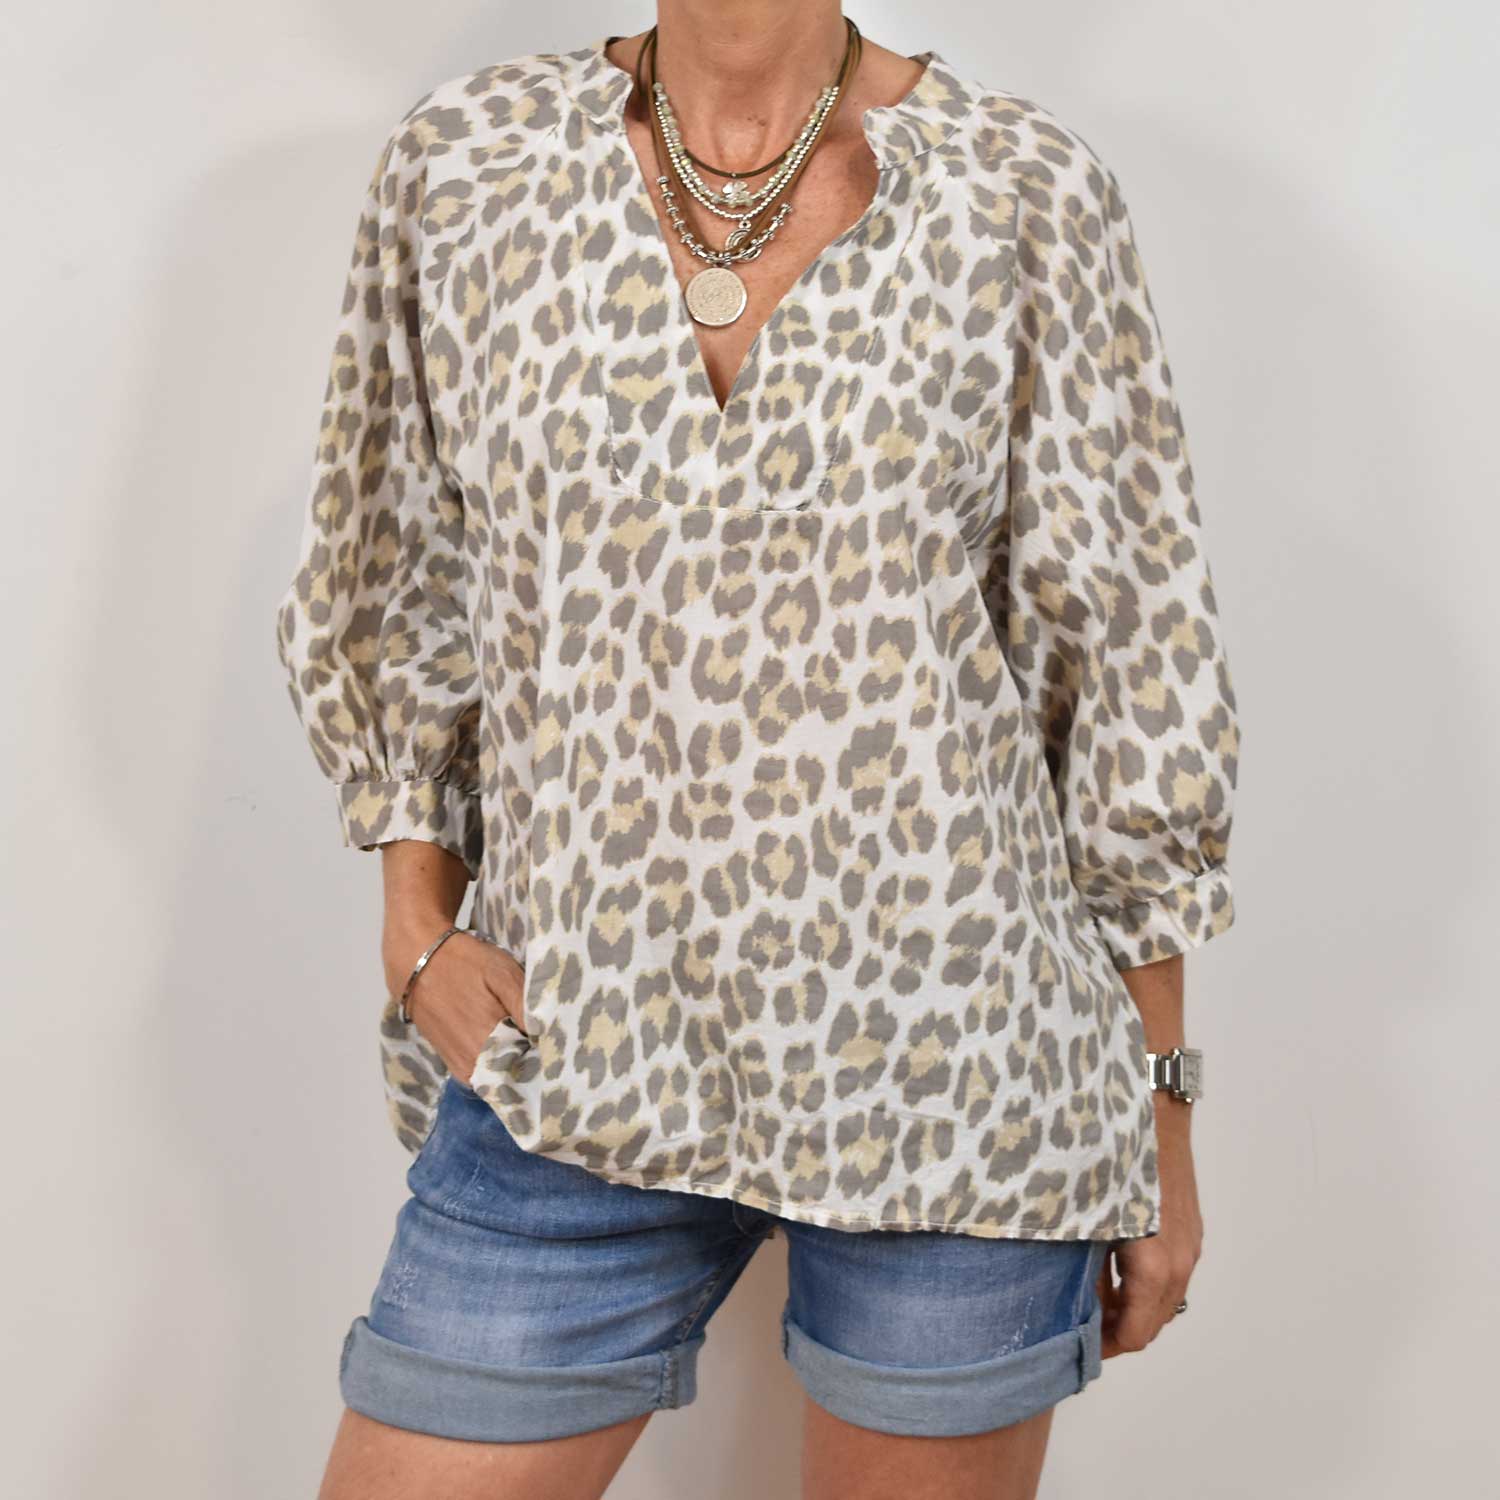 Leopard blouse